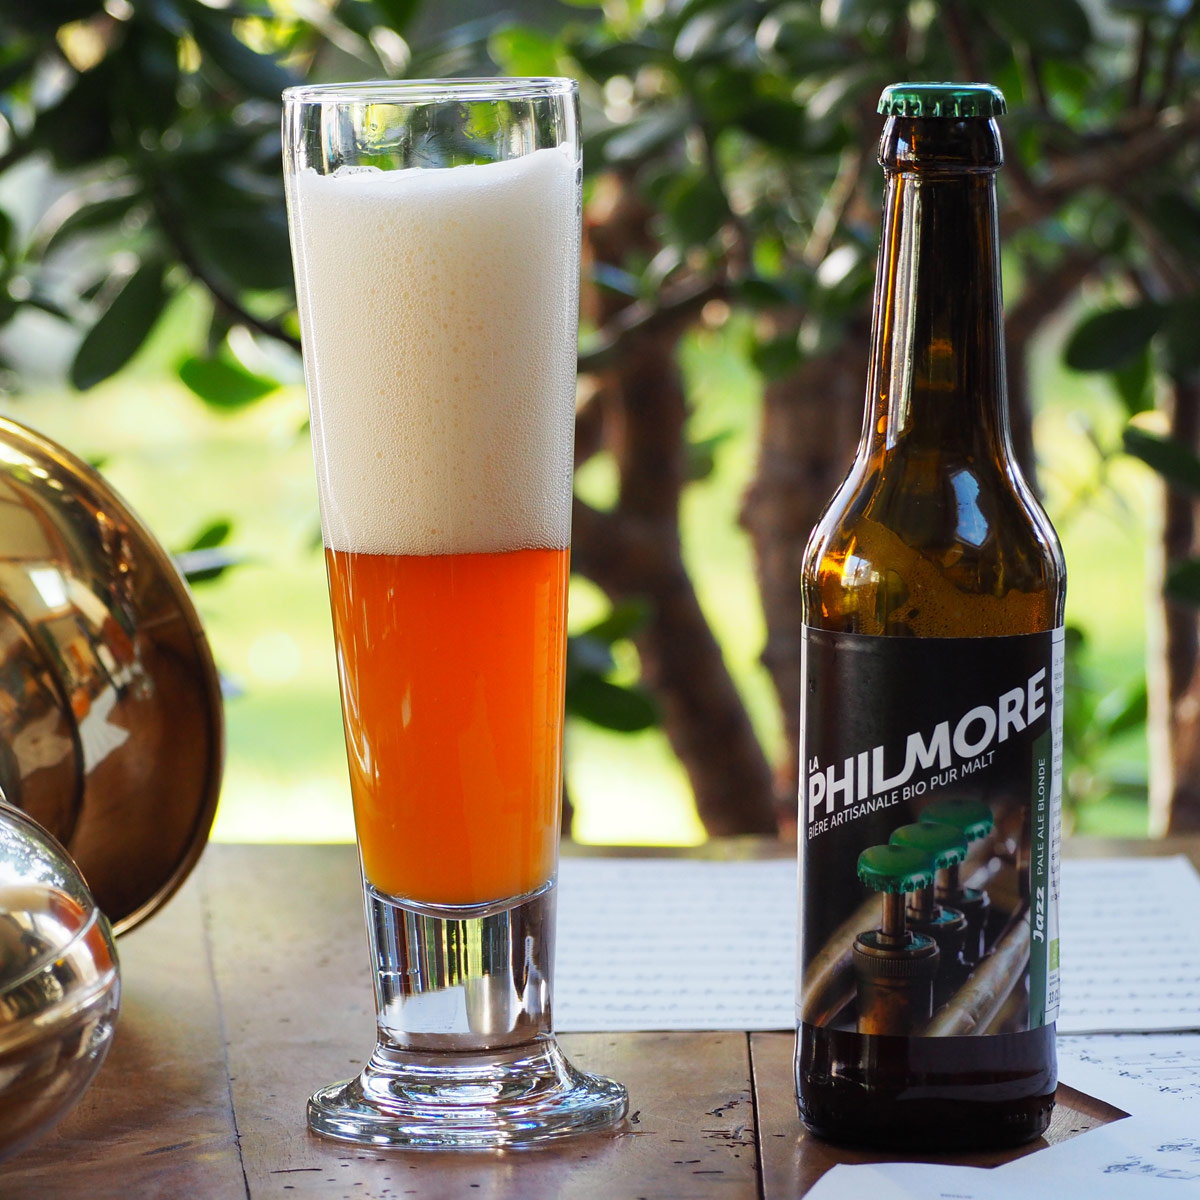 La Philmore Jazz – Bière artisanale bio et pur malt